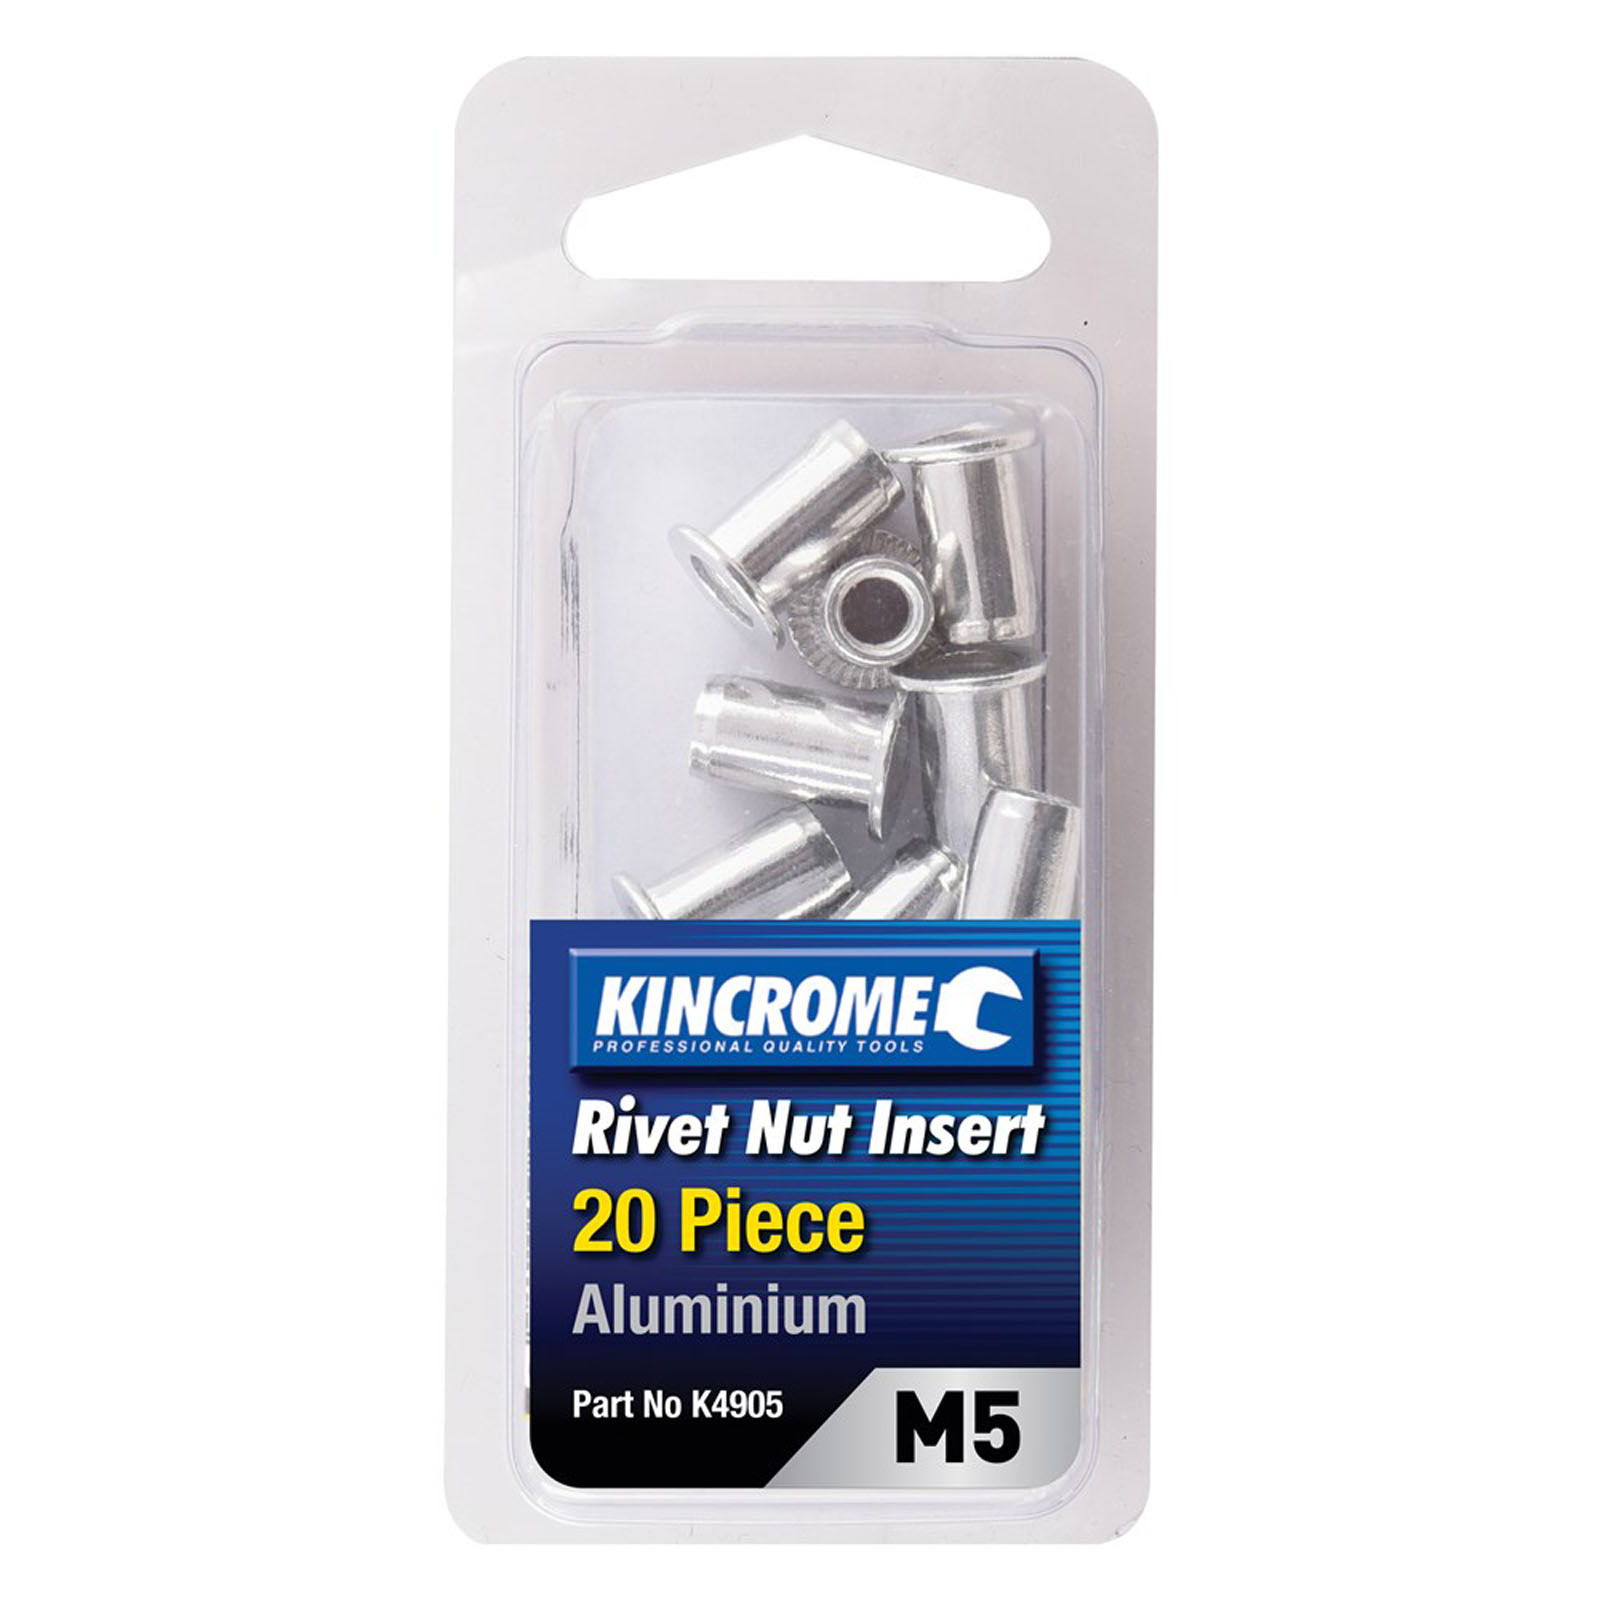 DRAPER zinc-plated threaded insert rivet nuts M5 x 0,8mm (10 pieces) - 04052